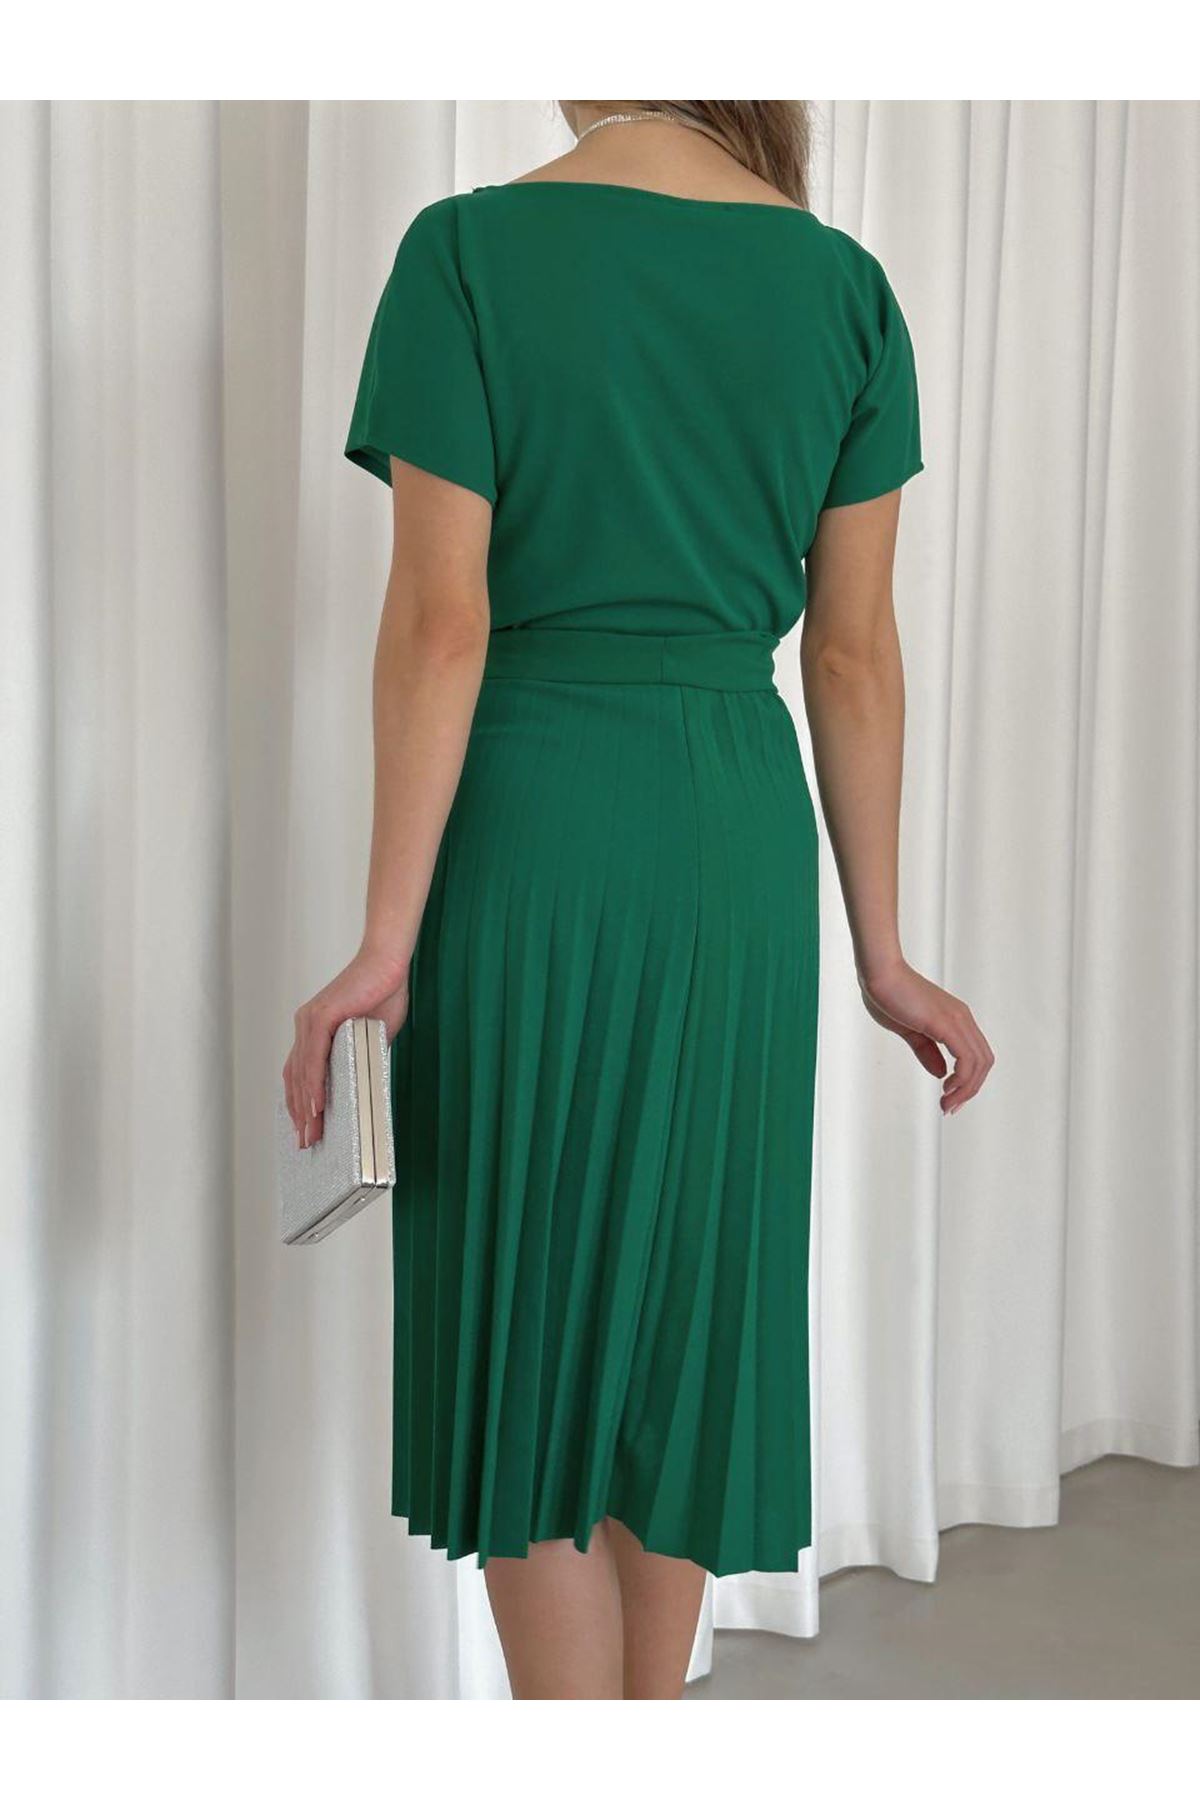 Kadın Yeşil Krep Kumaş Pliseli Kuşaklı Dizaltı Elbise 2E-2125